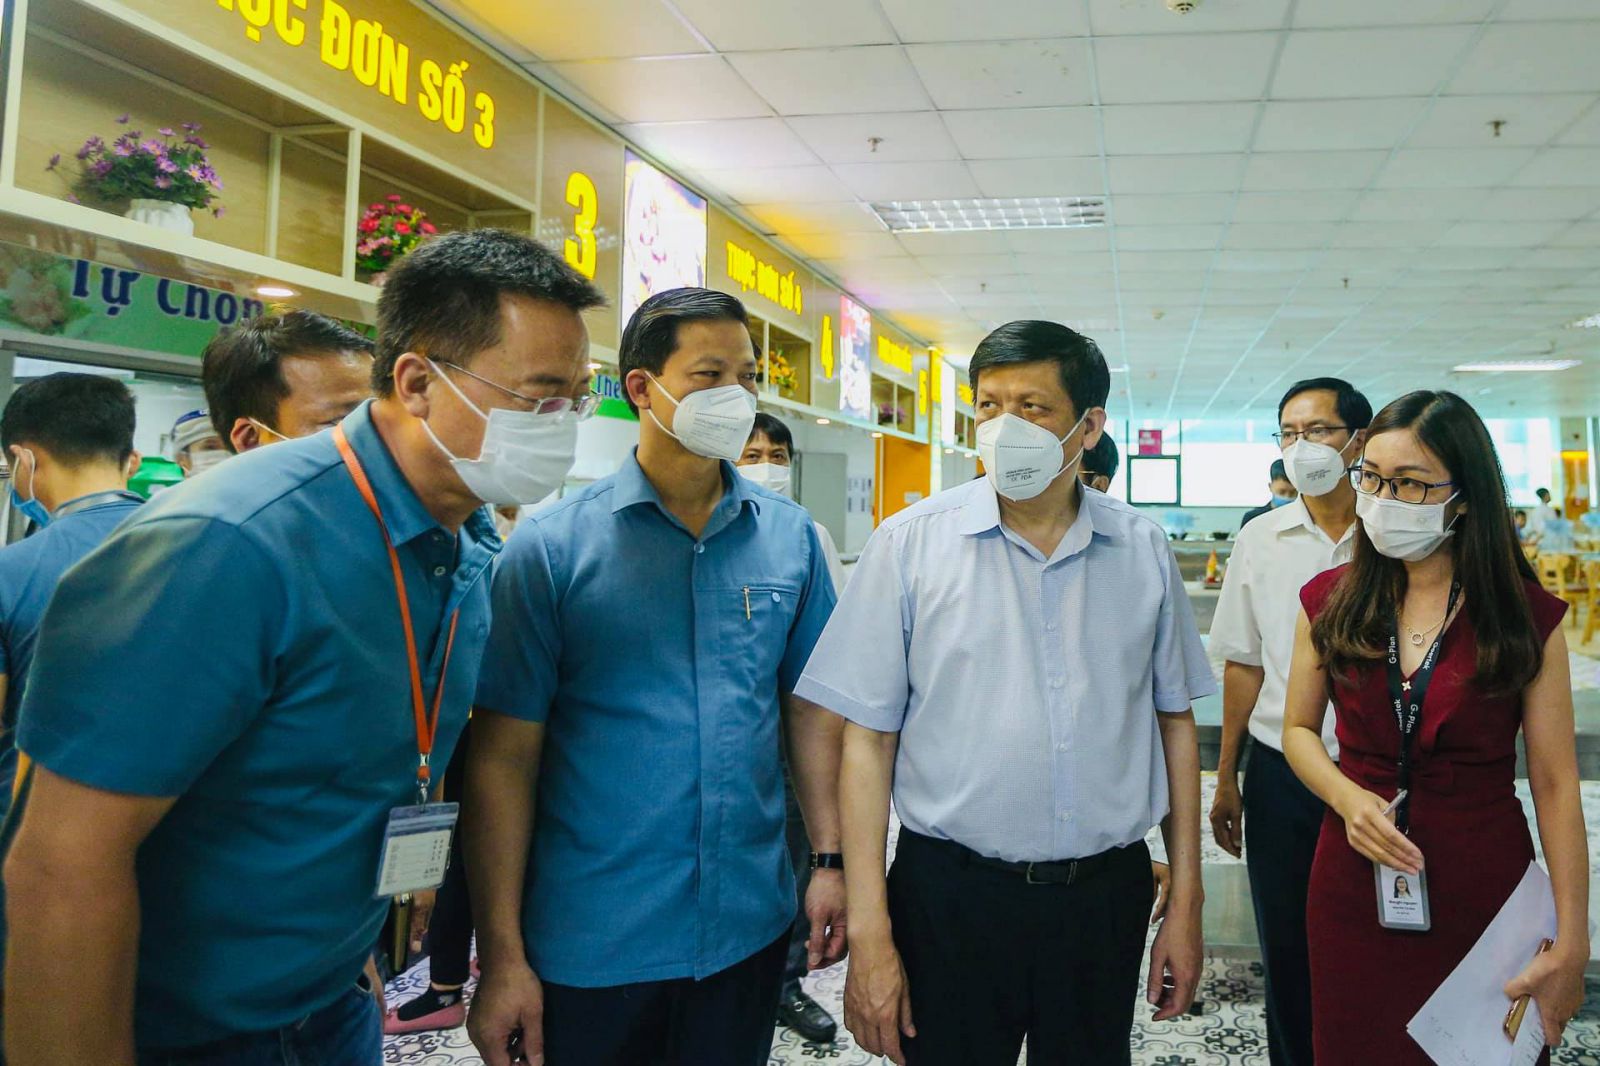 Bộ trưởng Nguyễn Thanh Long cùng đoàn công tác của Bộ Y tế đã đến kiểm tra công tác phòng chống dịch tại nhà máy Gortex thuộc khu công nghiệp Quế Võ, tỉnh Bắc Ninh trưa ngày 18/5.